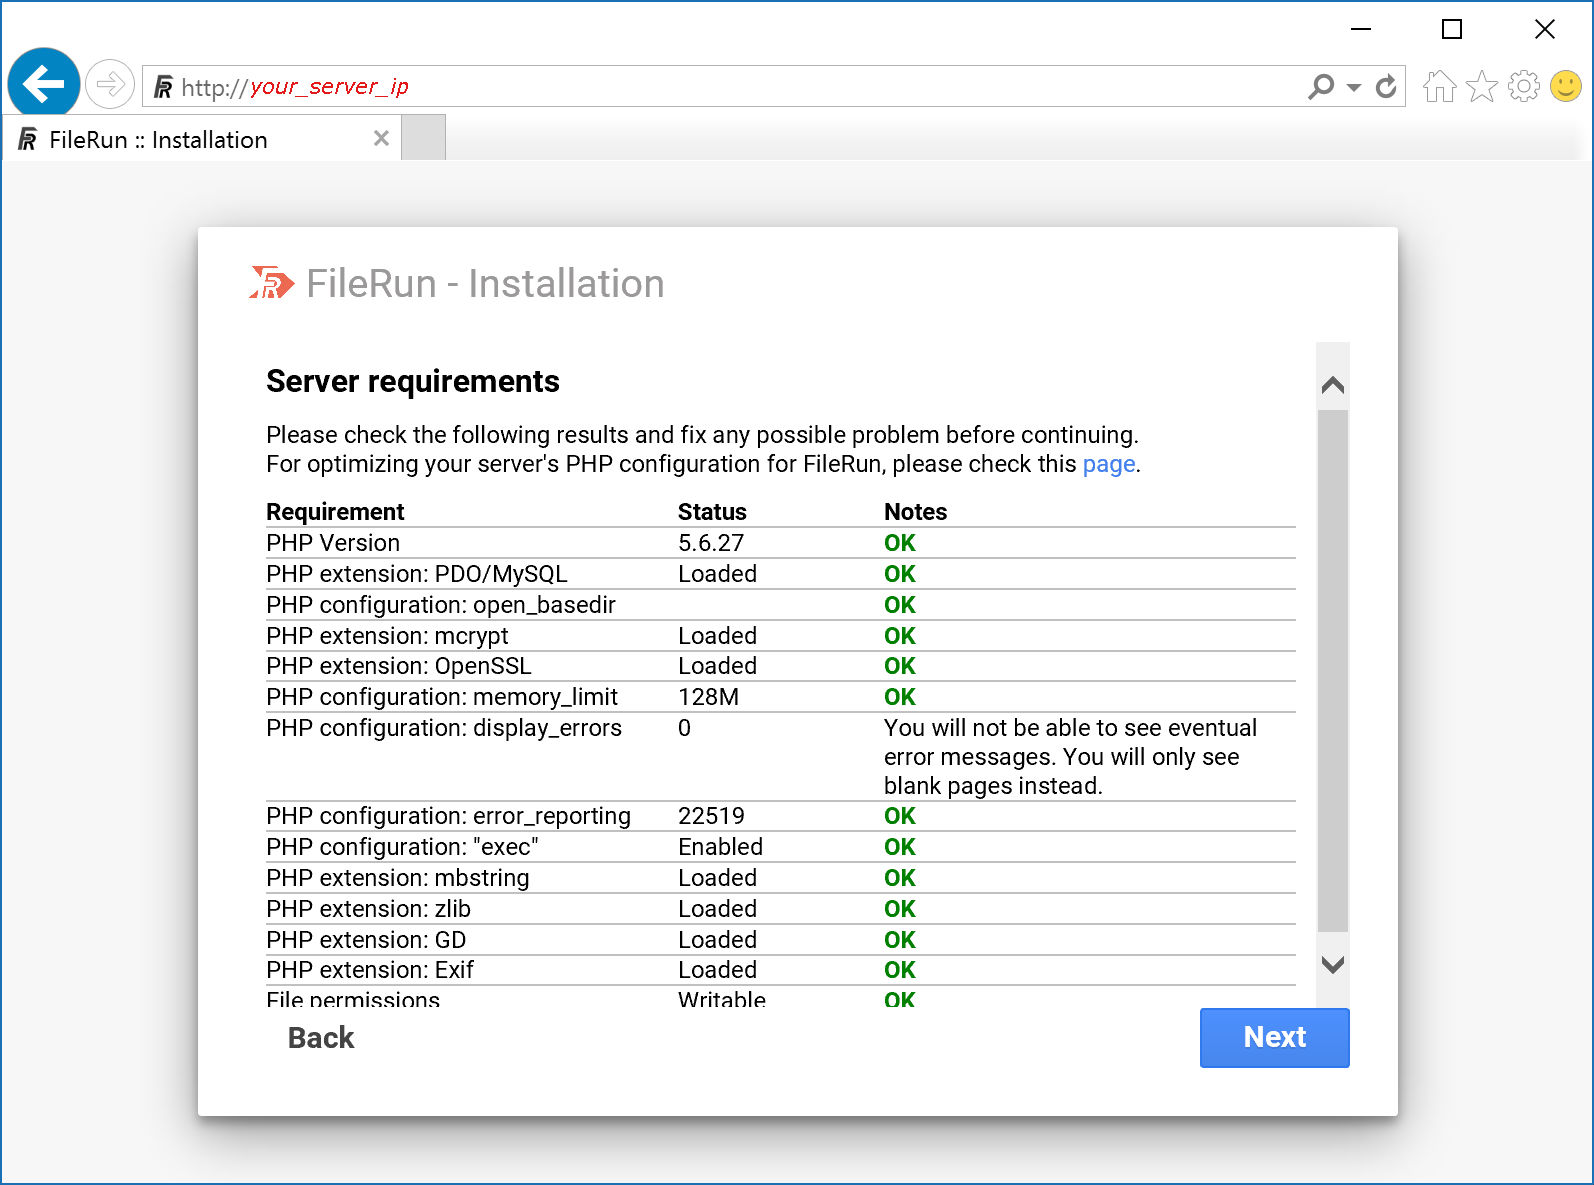 FileRun server requirements check